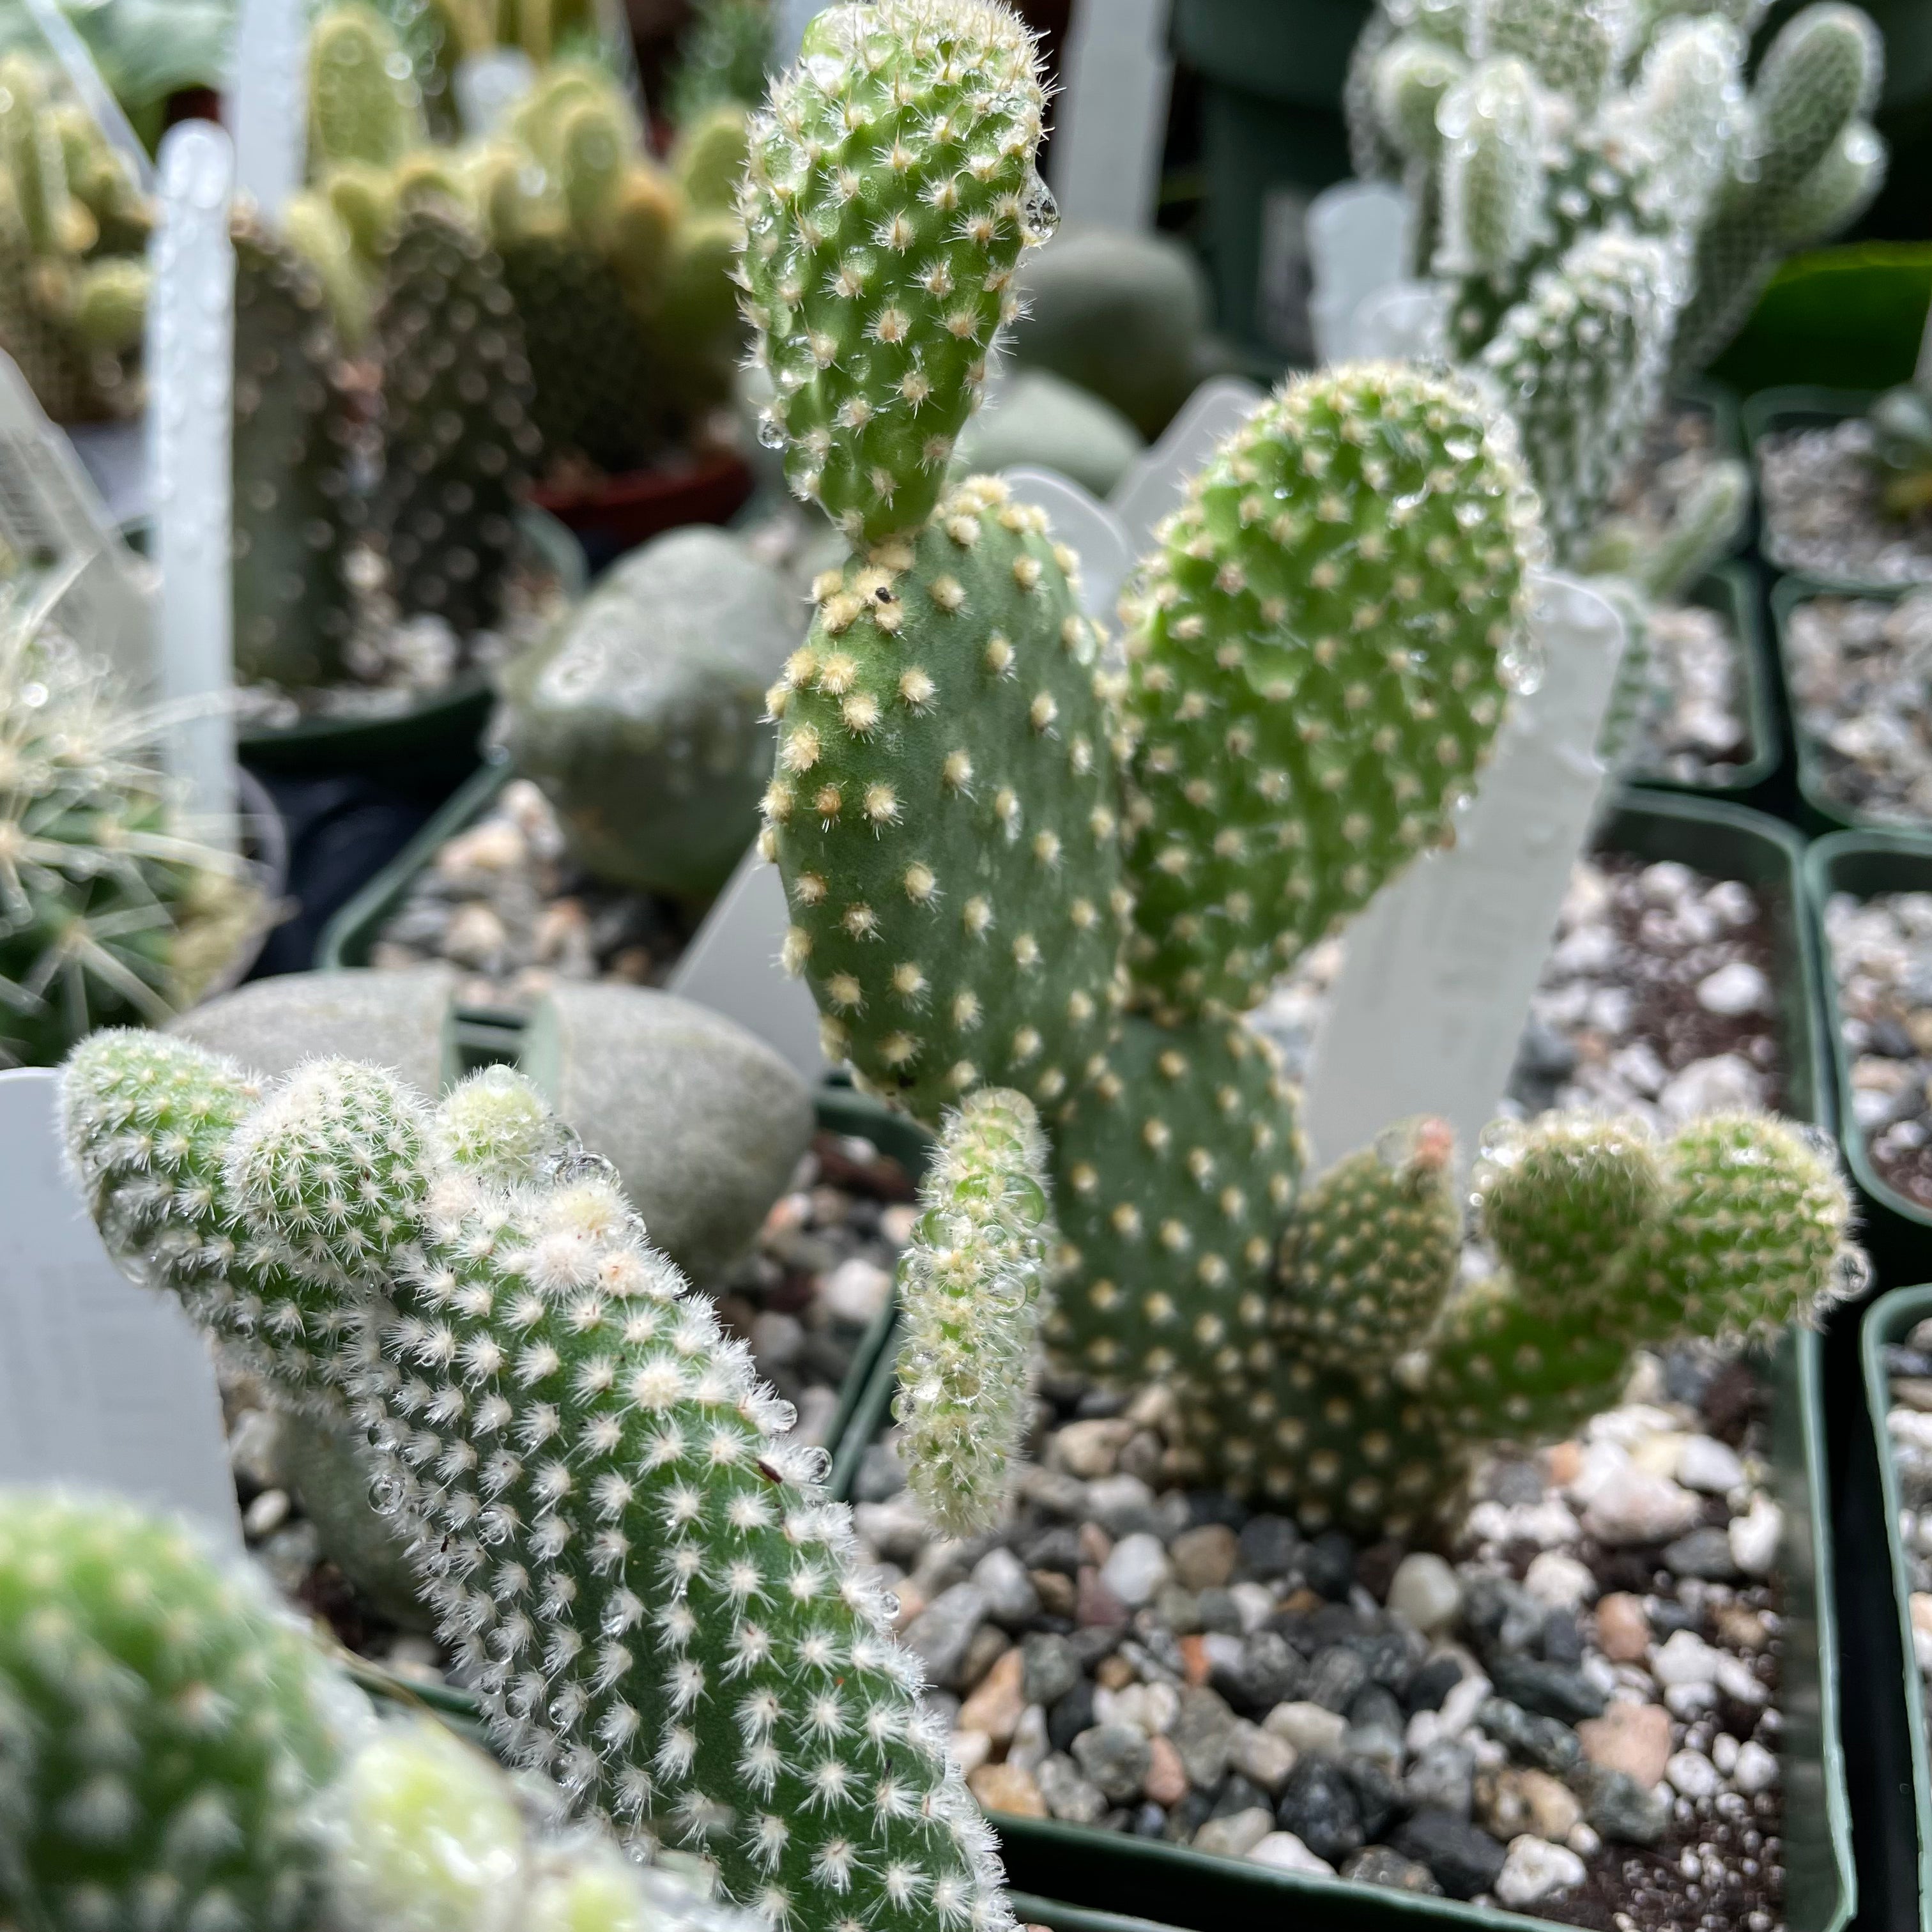 Opuntia microdasys - Bunny Ears Cactus